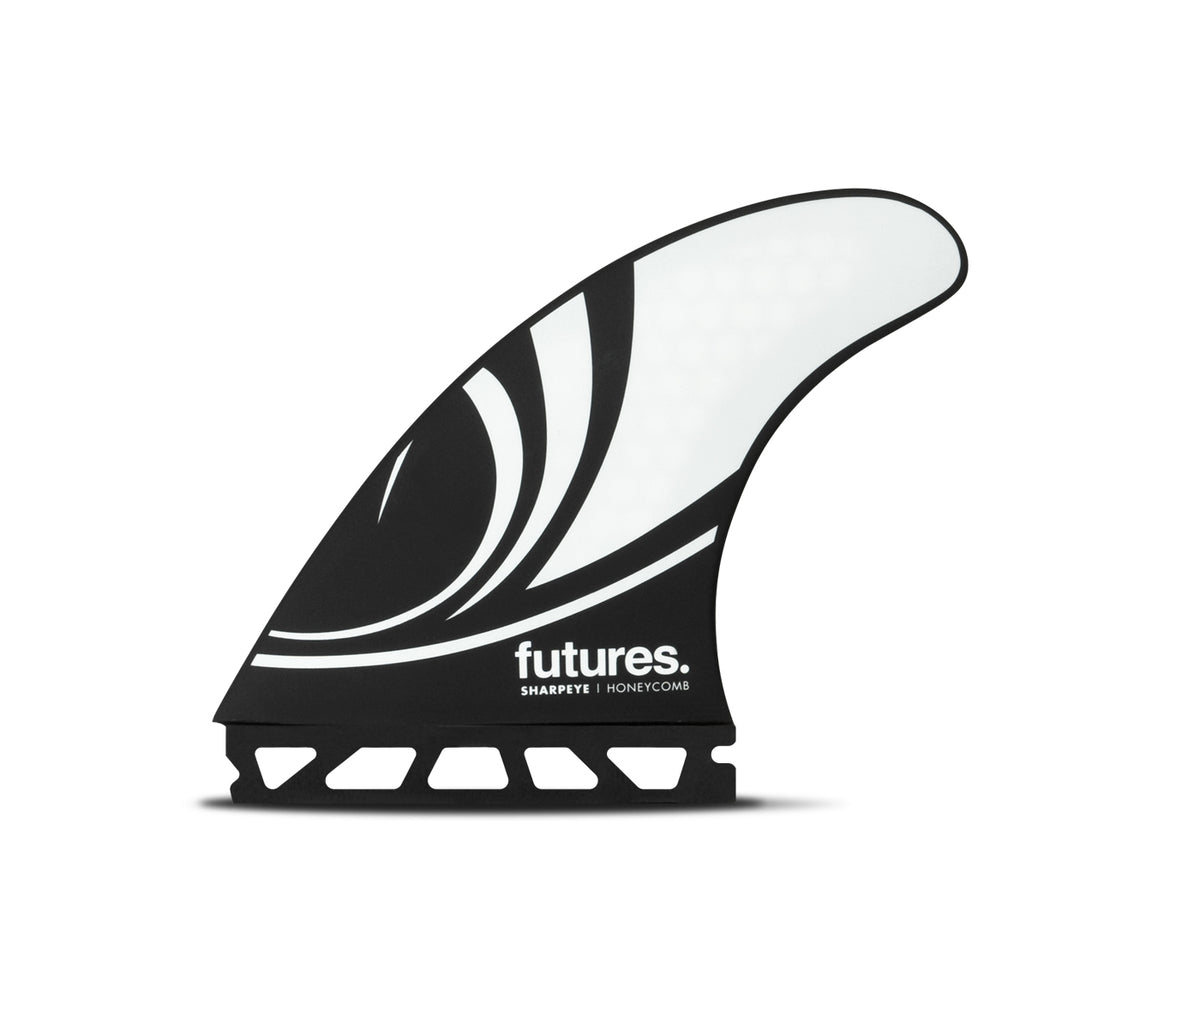 futuresfins.com